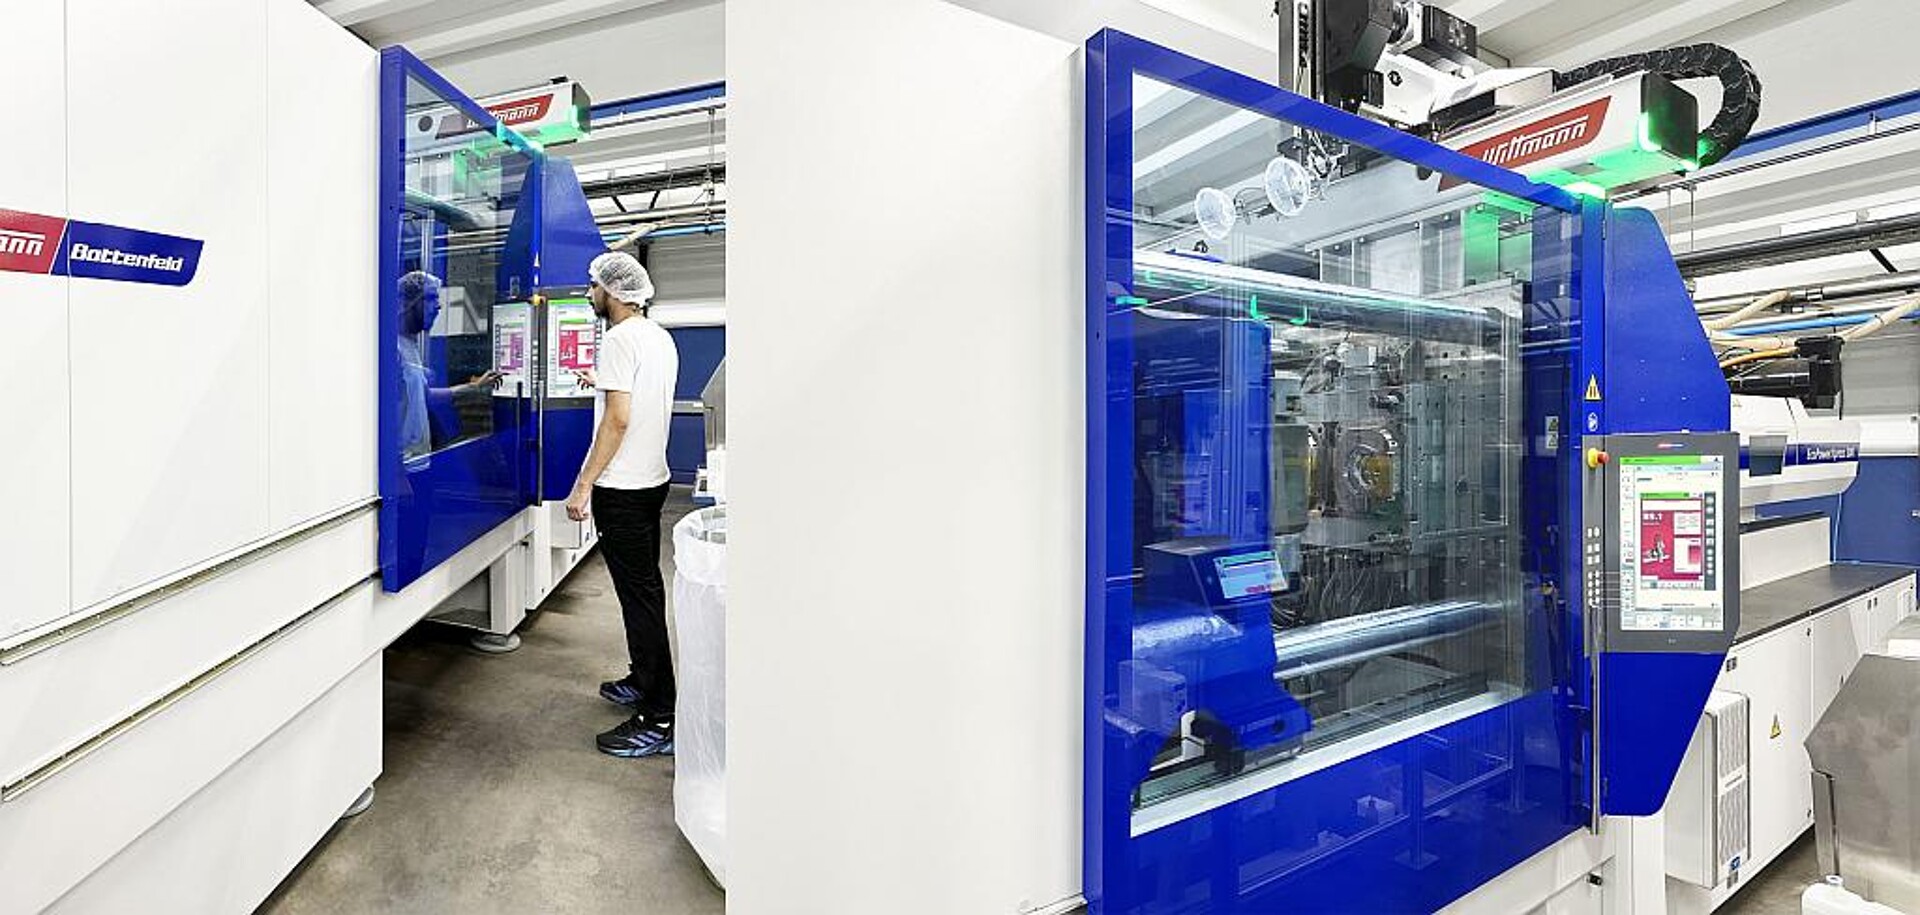 Die steuerungstechnische Integration von Spritzgießmaschine und Roboter vereinfacht die Bedienung der Produktionszelle. (Fotos: Wittmann)